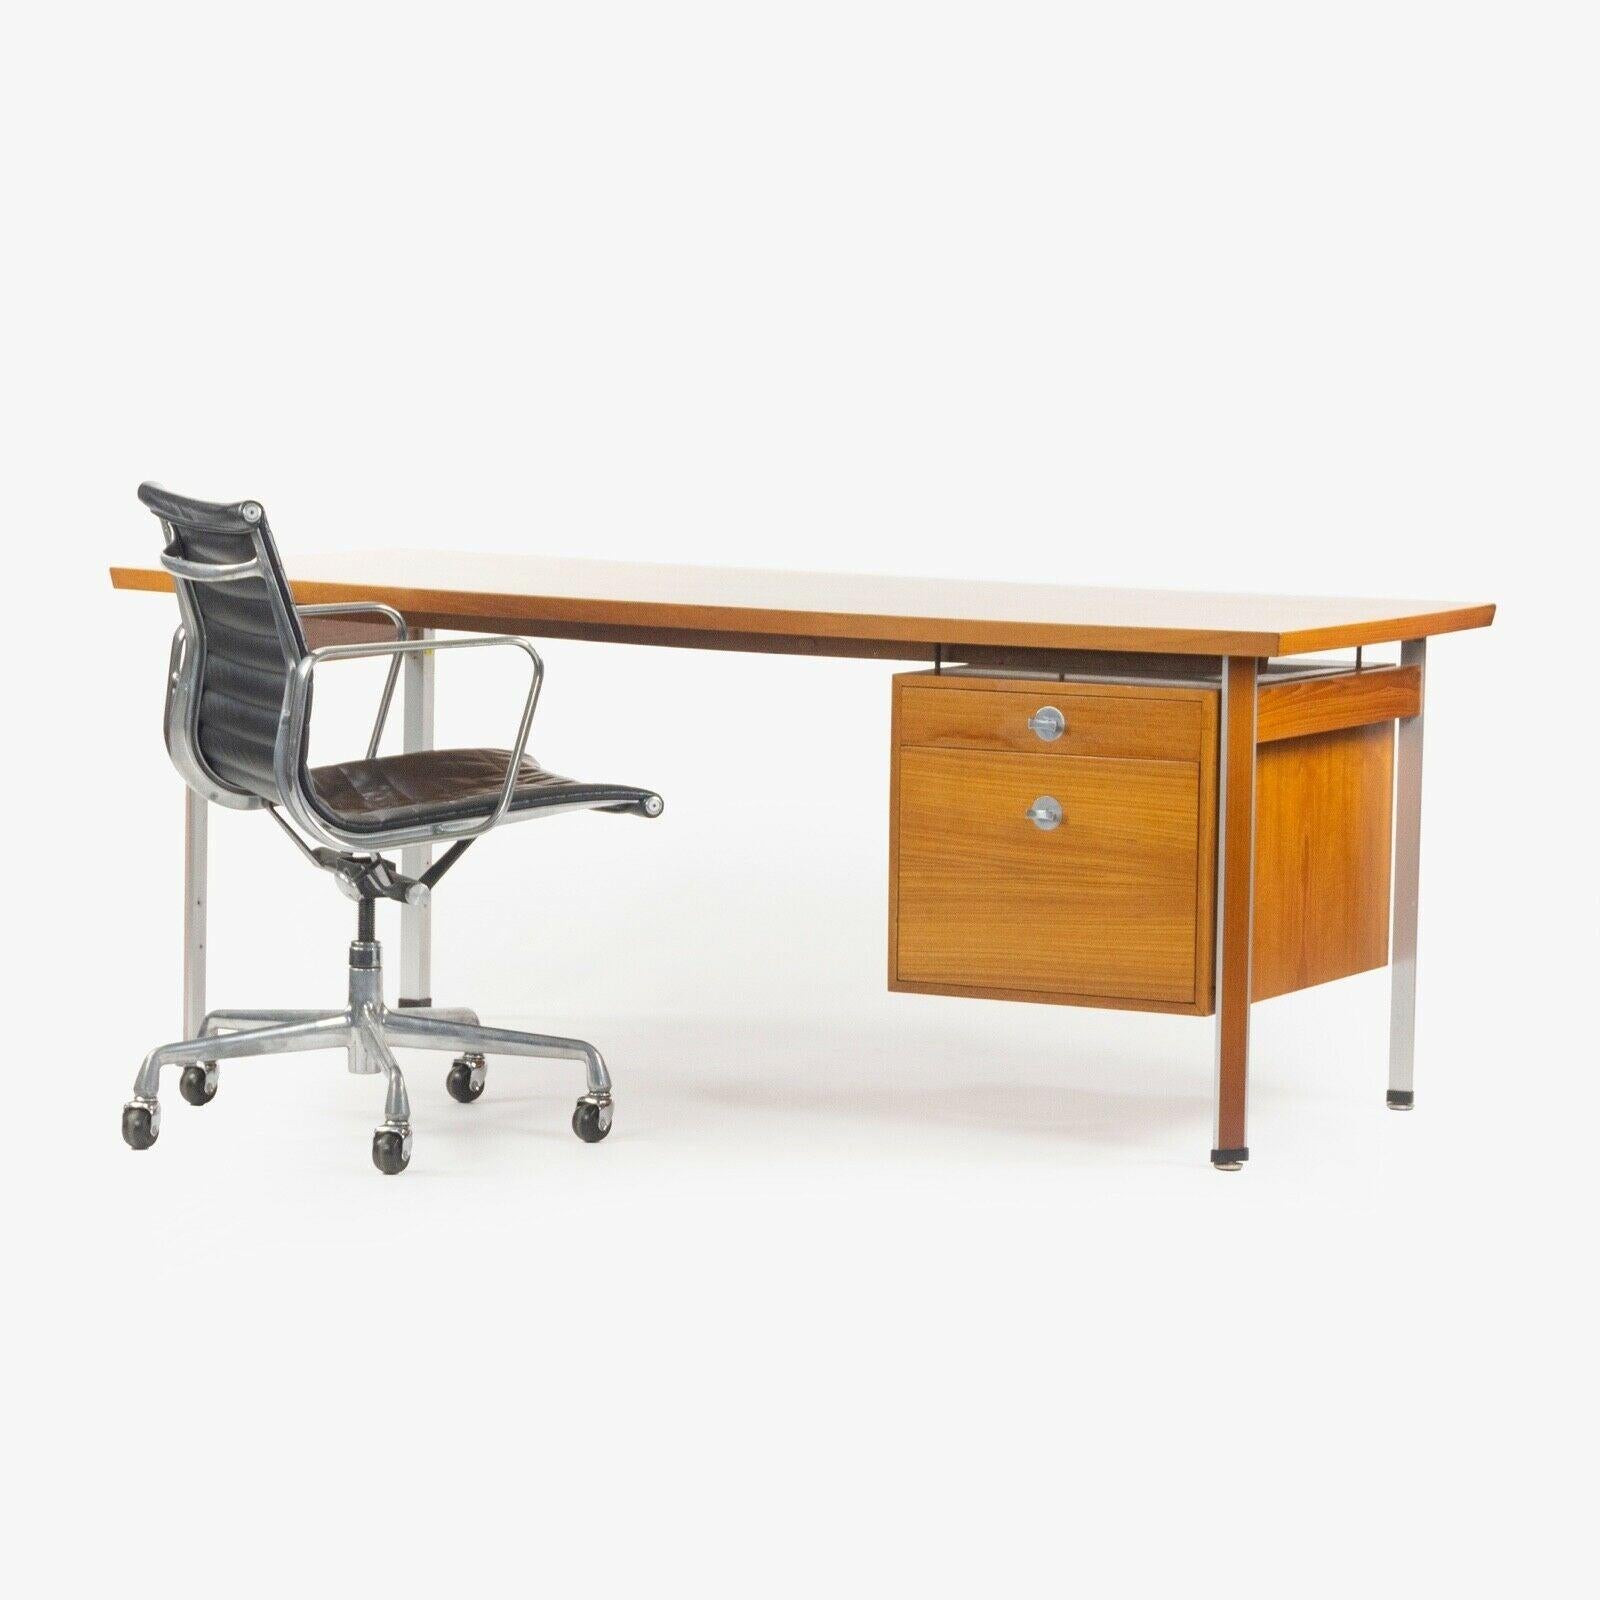 Zum Verkauf steht ein Finn Juhl für France & Son Technocrat Schreibtisch Modell 963 aus Teakholz aus den 1960er Jahren. Insgesamt ist dieser Artikel in sehr gutem bis ausgezeichnetem Zustand. Die Holzplatte ist frei von größeren Kratzern, Flecken